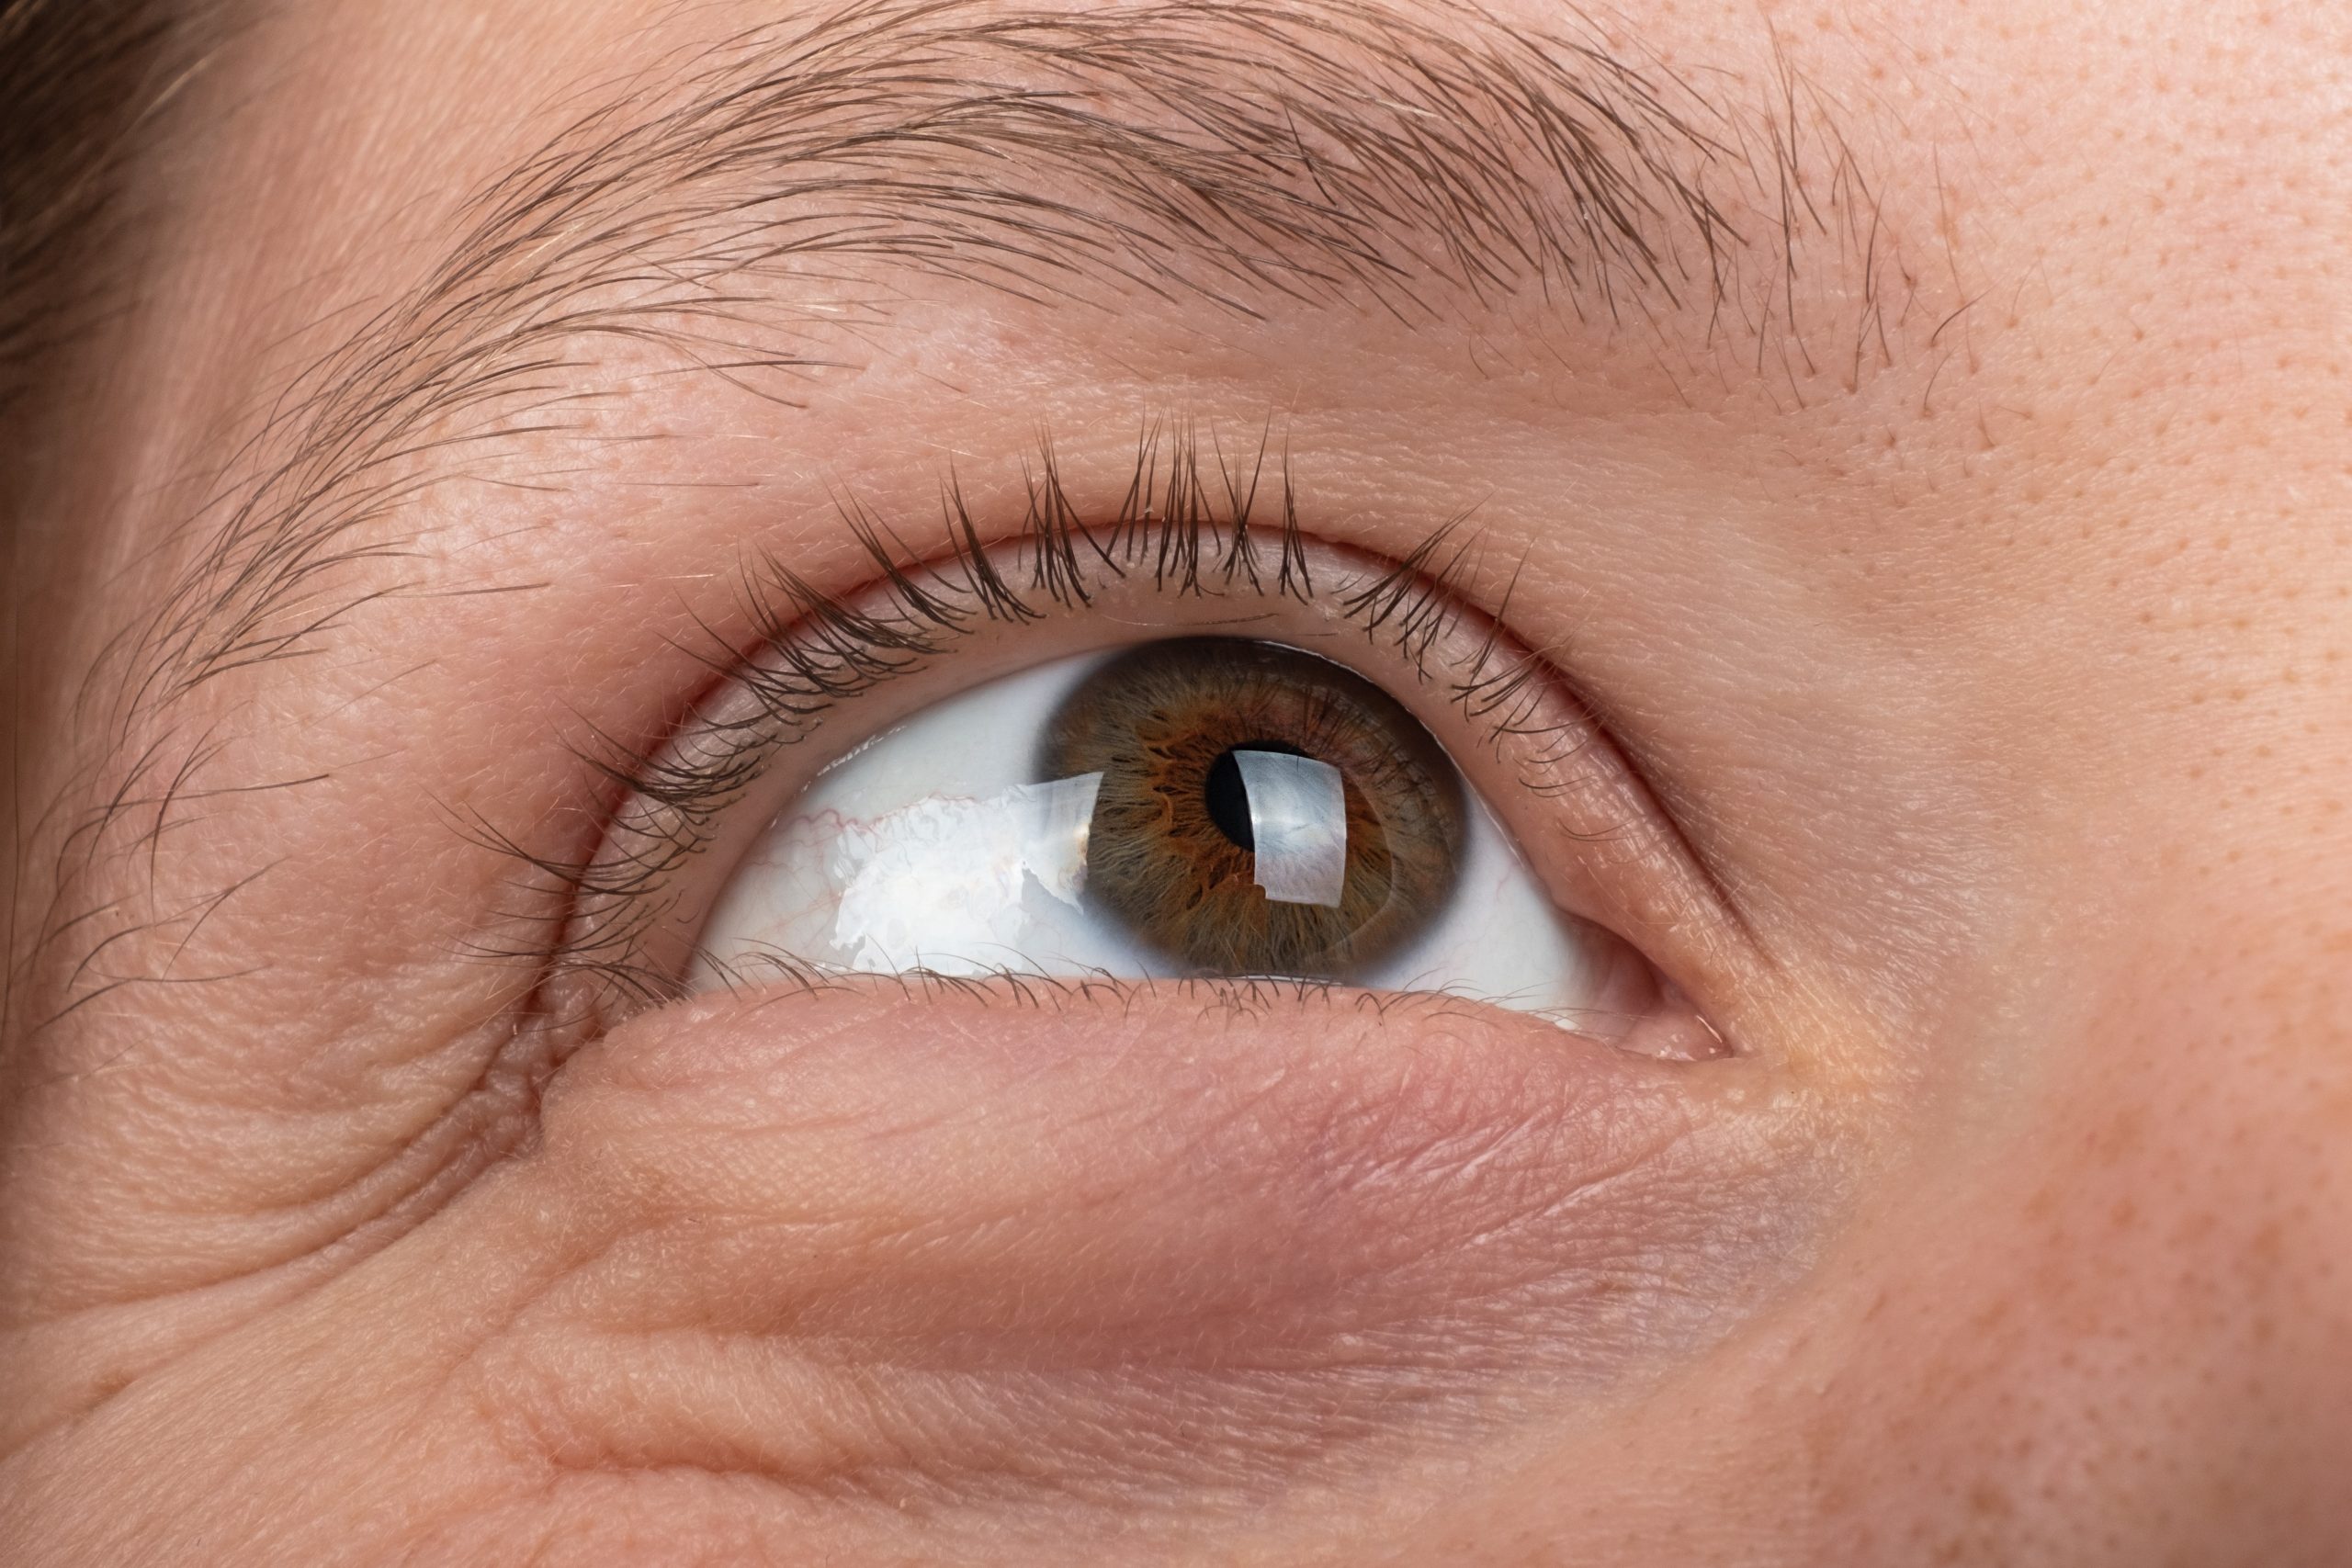 keratoconus disease of the cornea of the eye macro, fatigue corneal thinning